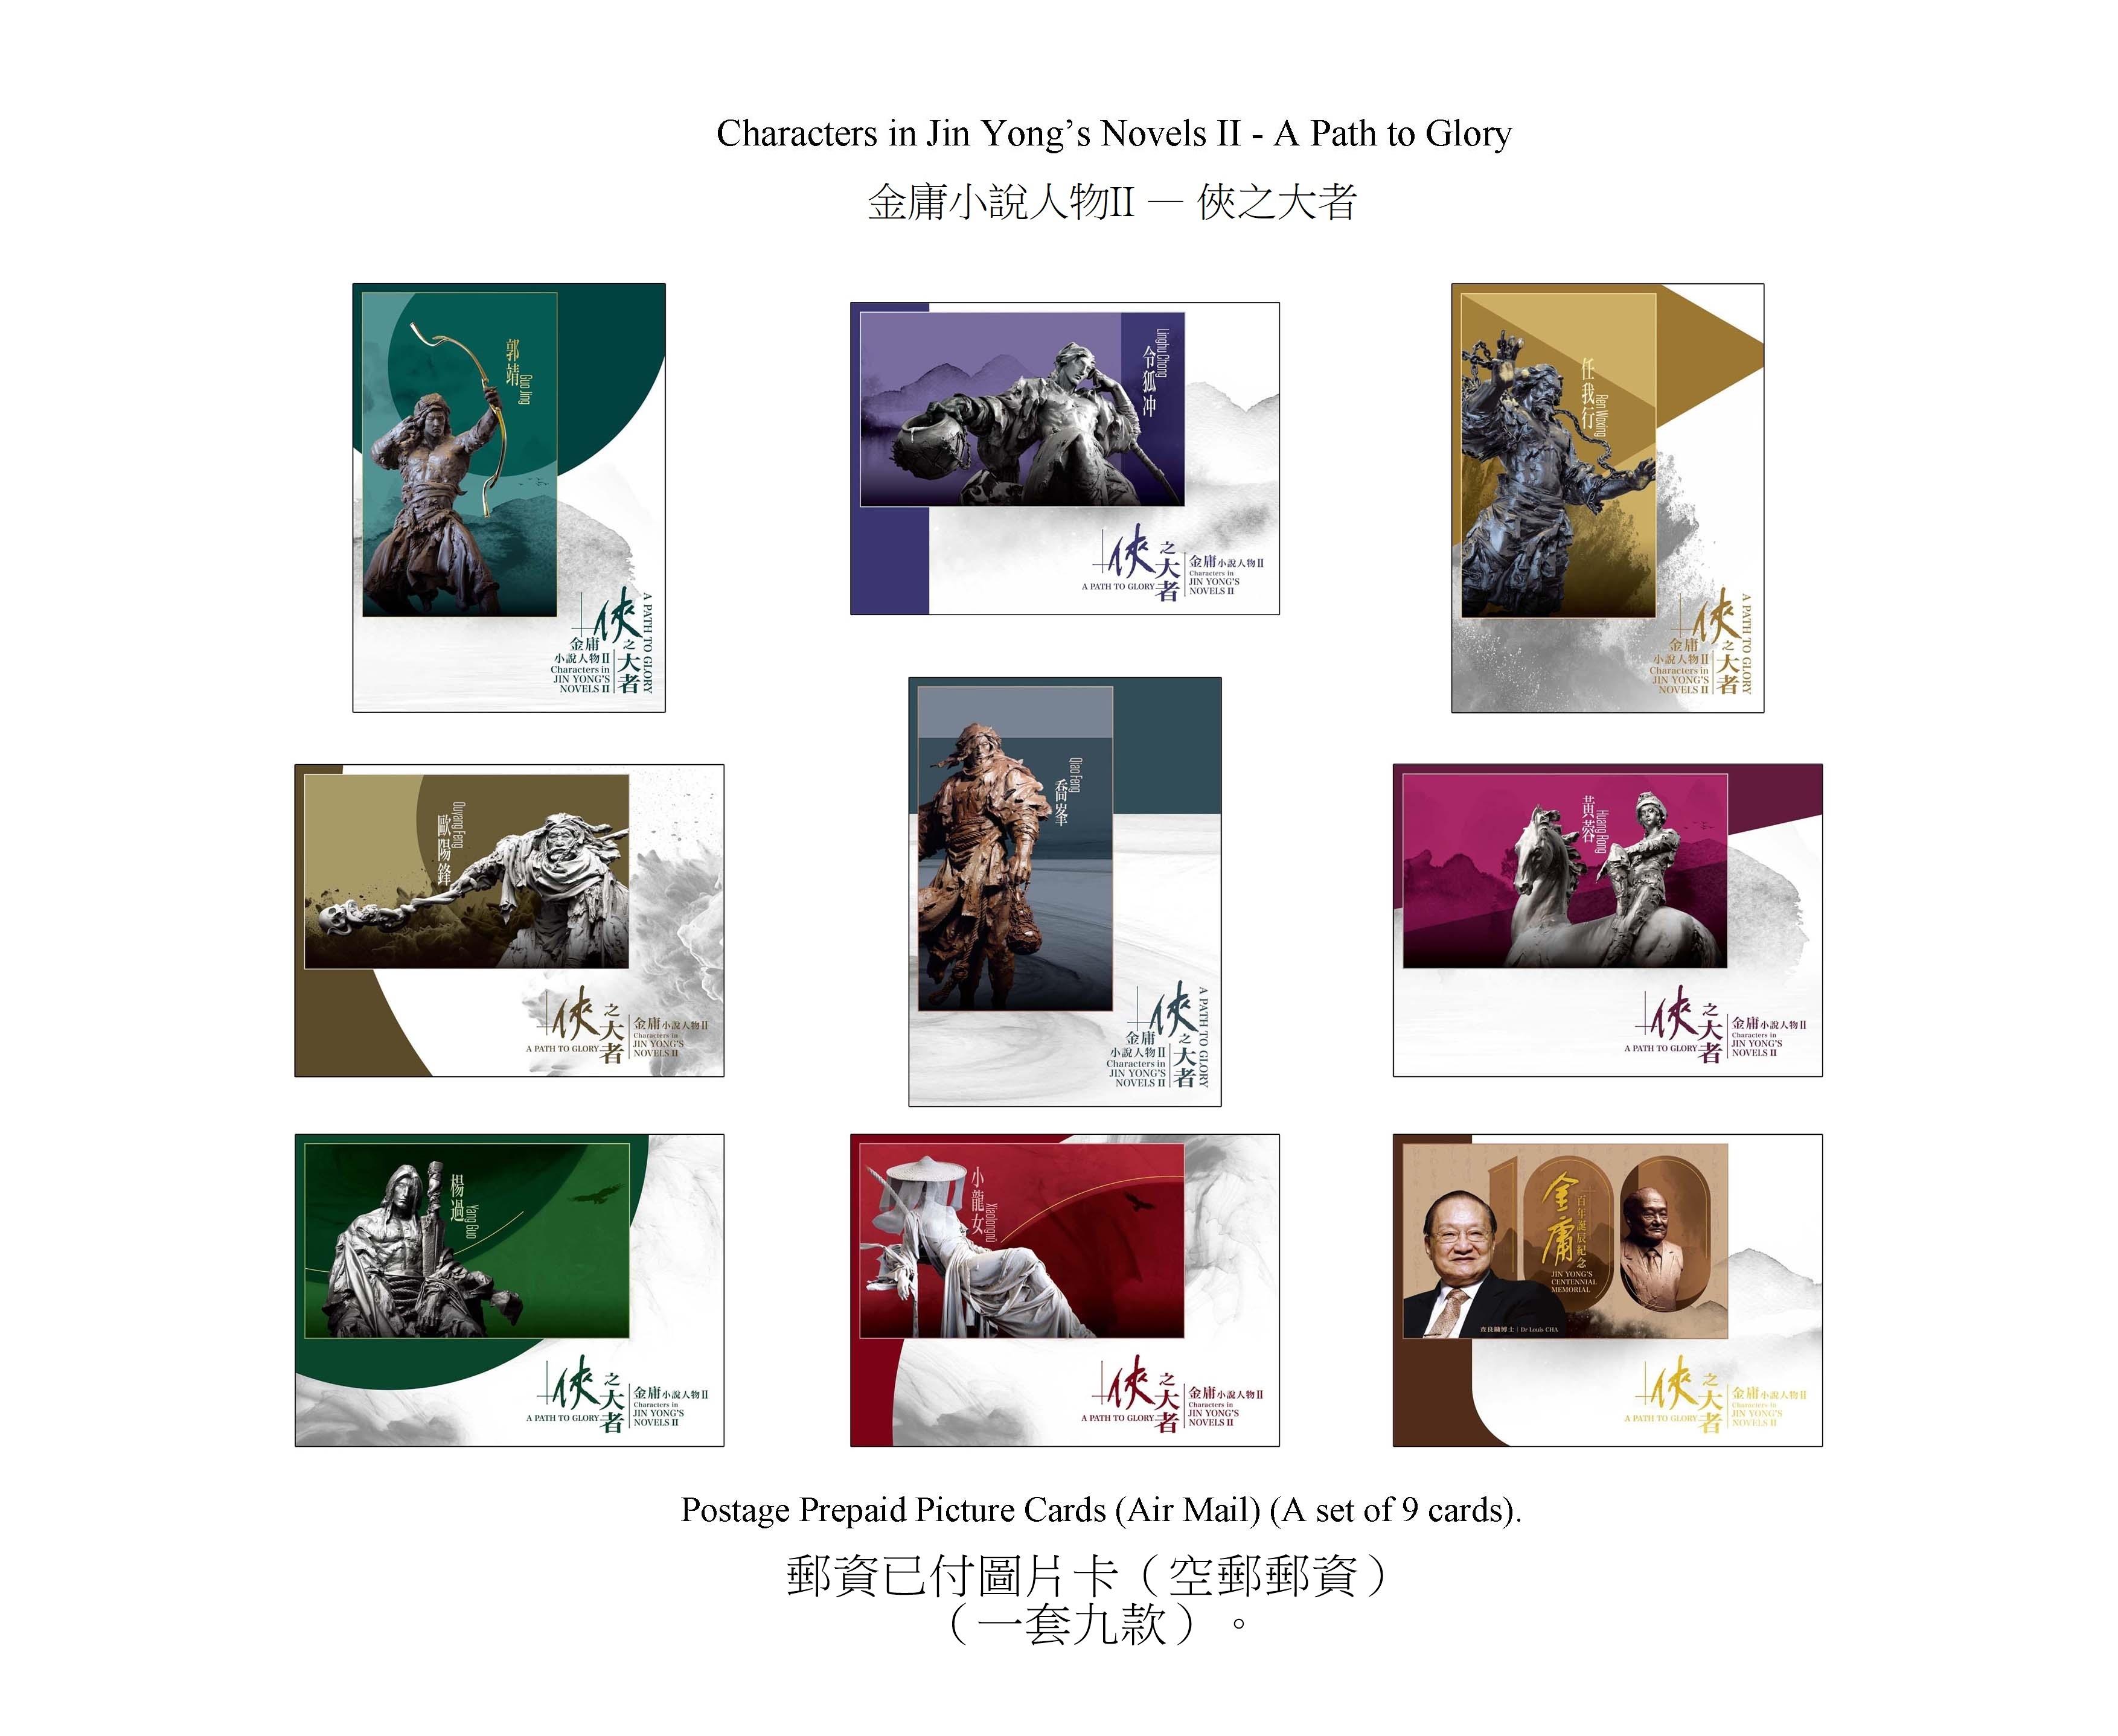 香港邮政三月十四日（星期四）发行以「金庸小说人物II──侠之大者」为题的特别邮票及相关集邮品。图示邮资已付图片卡（空邮邮资）。